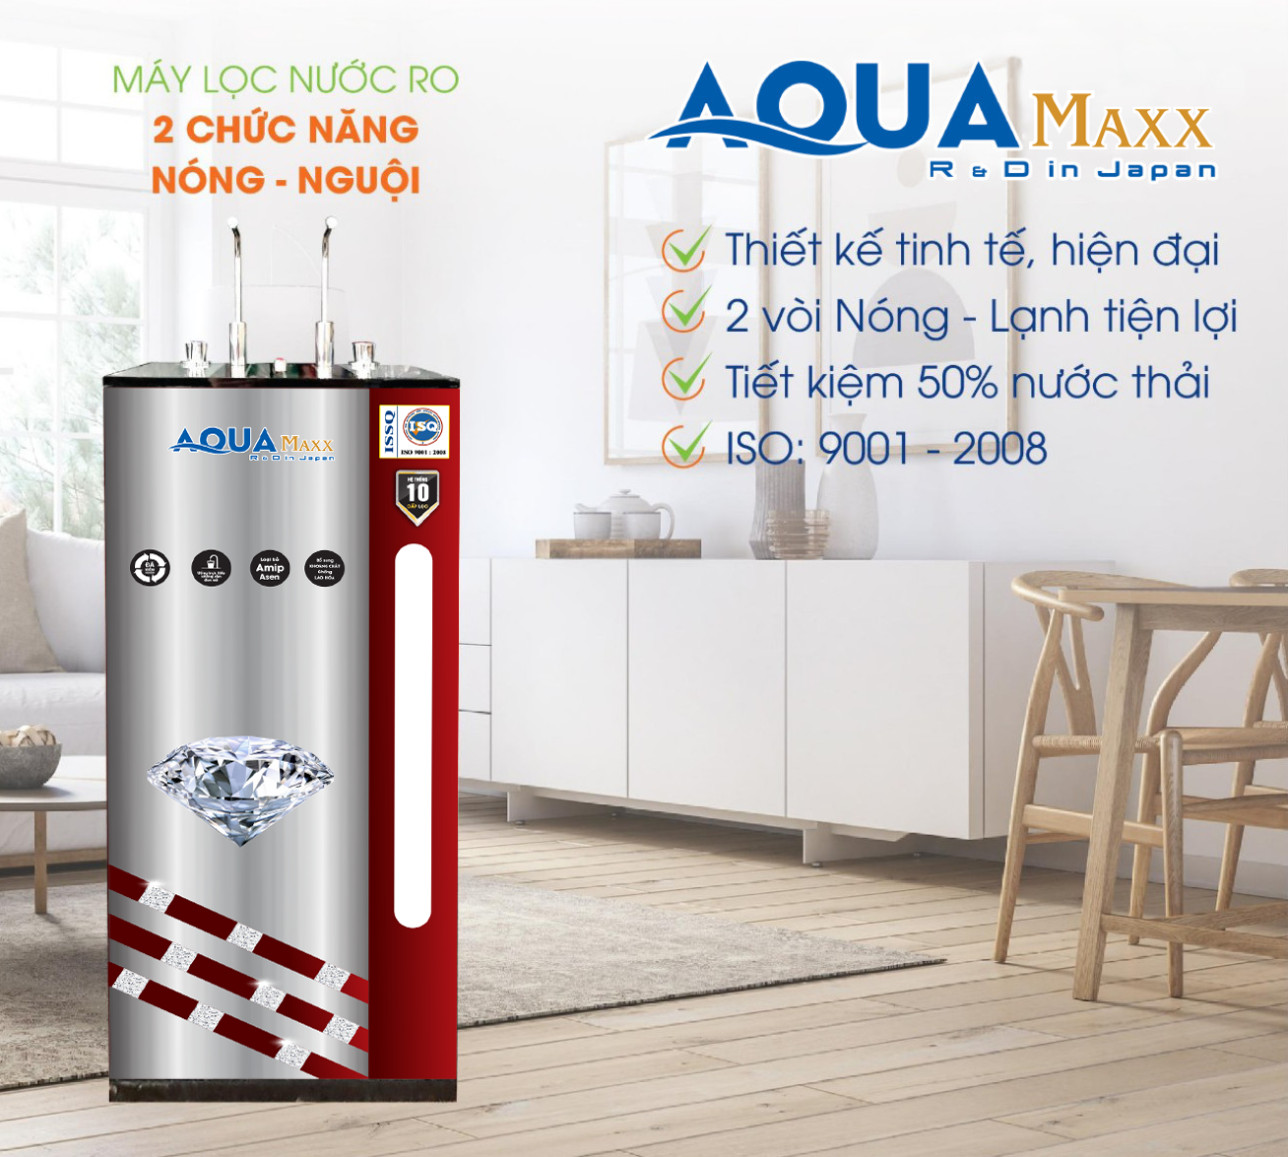 Máy lọc nước Aquamaxx AQ86